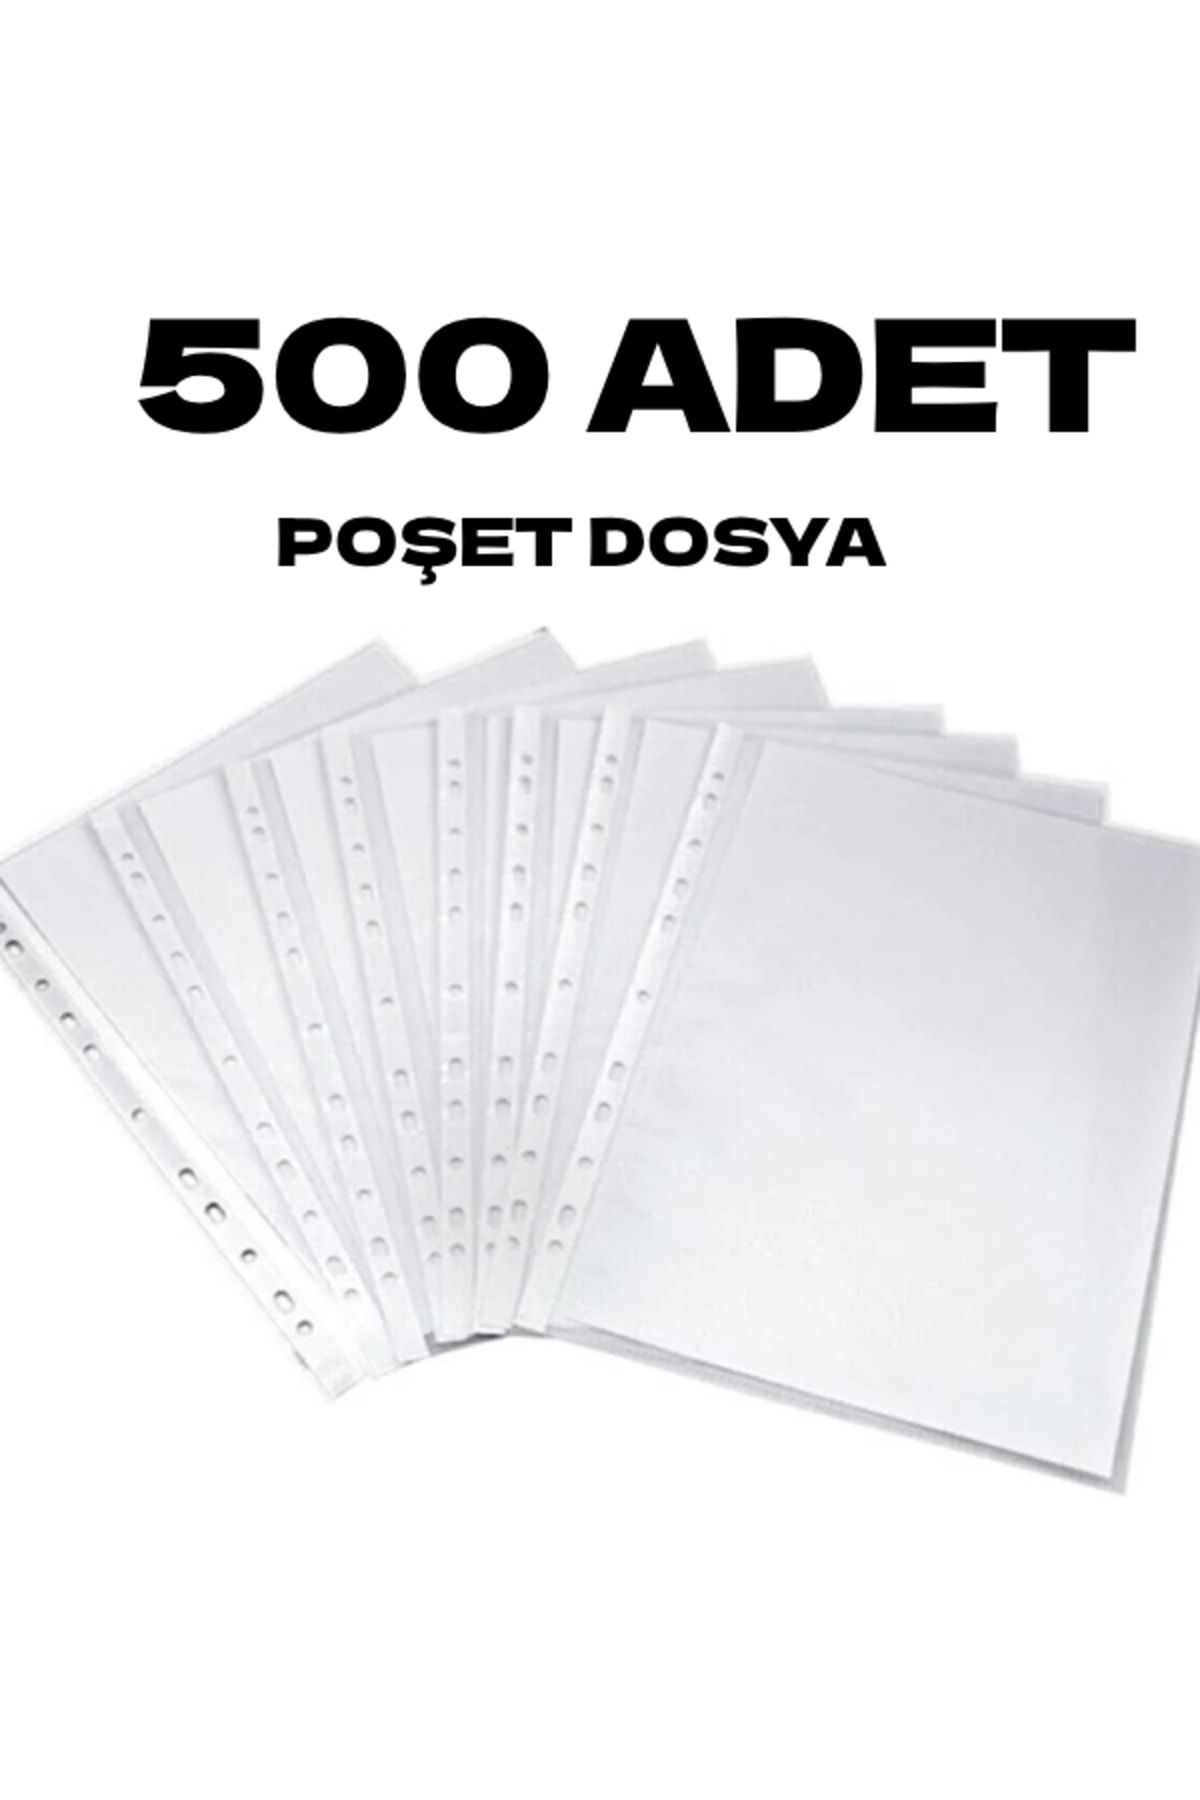 nistabolje 500 Adet A4 Şeffaf Dosya Föy Poşet Dosya